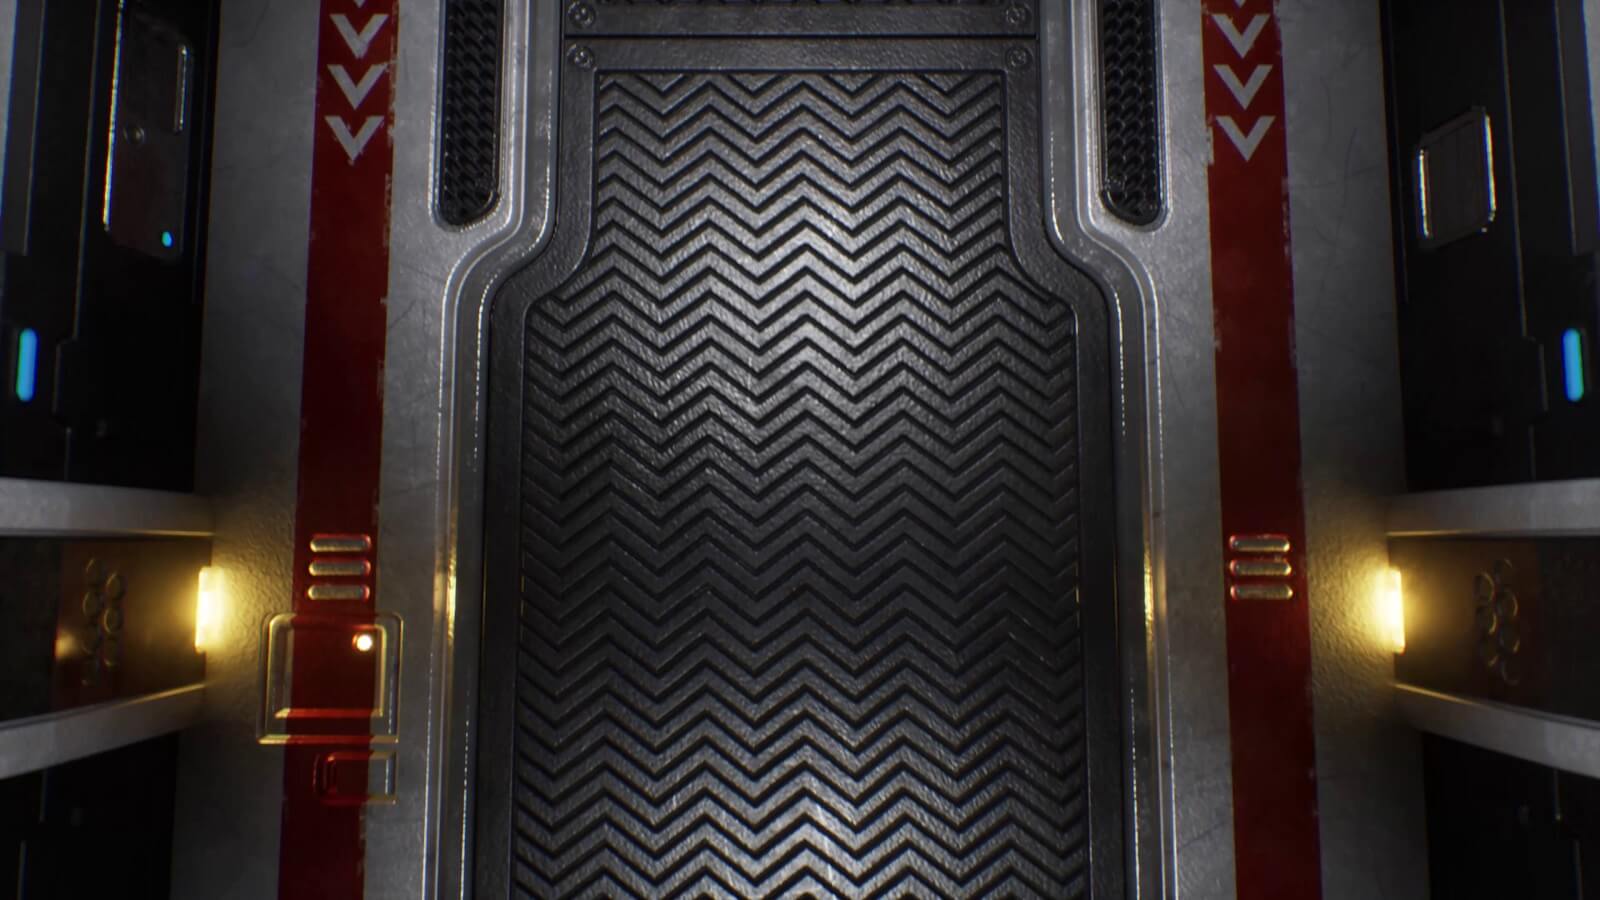 Metal grated flooring inside a spaceship corridor